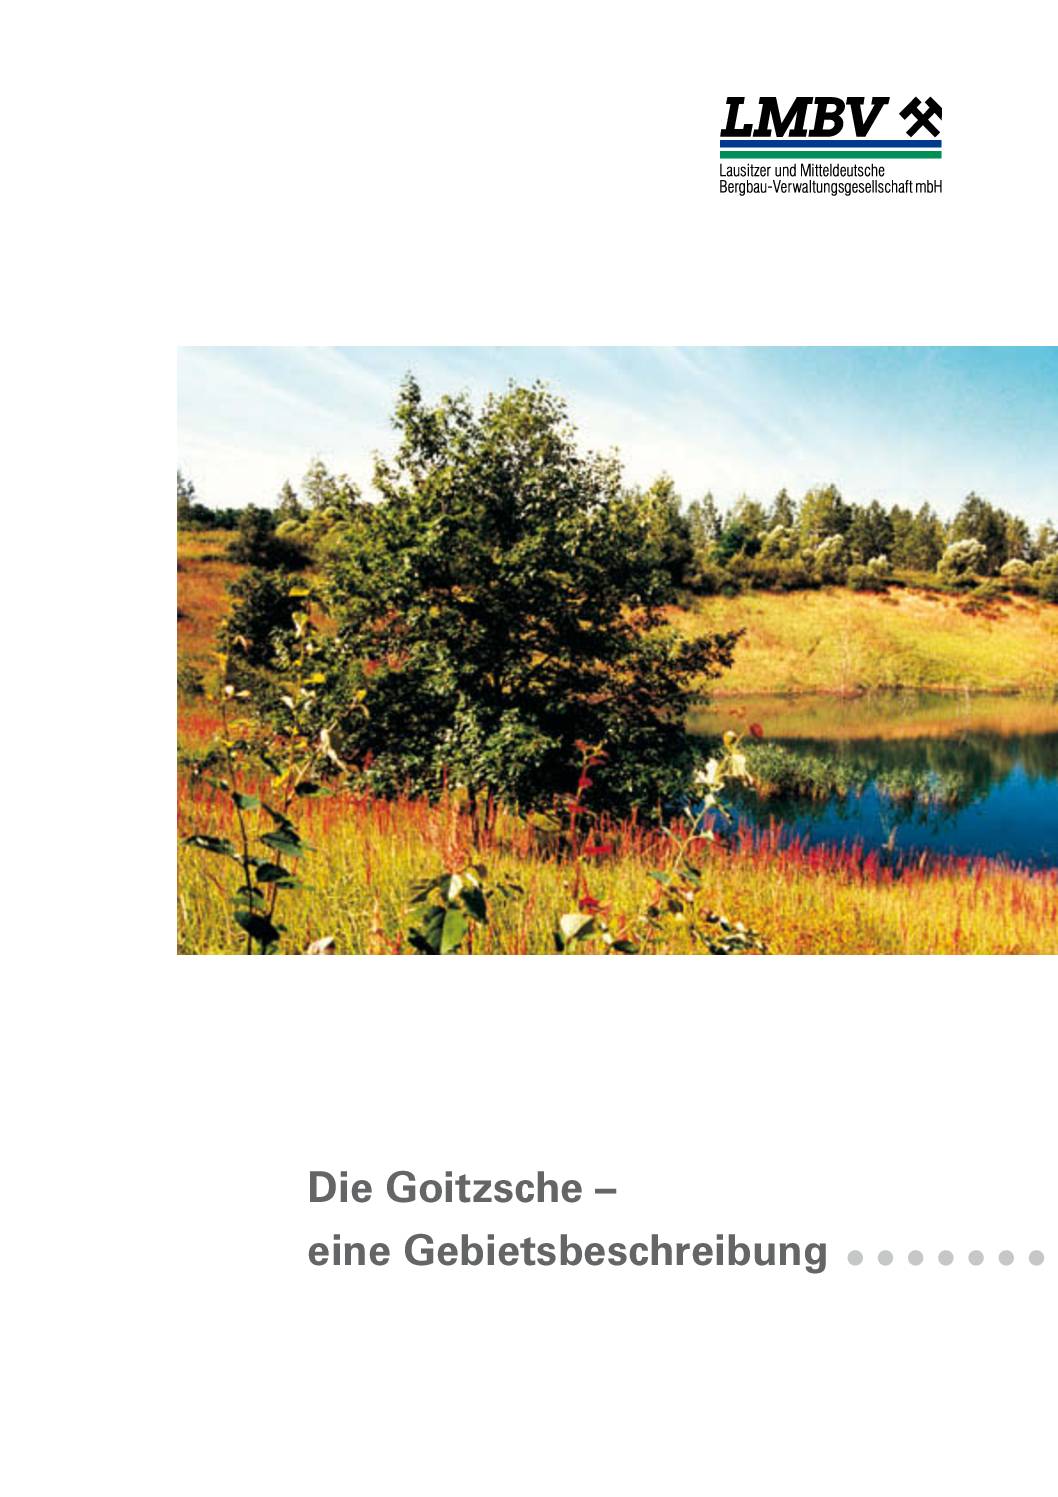 Goitzsche Gebietsbeschreibung 2002 pdf